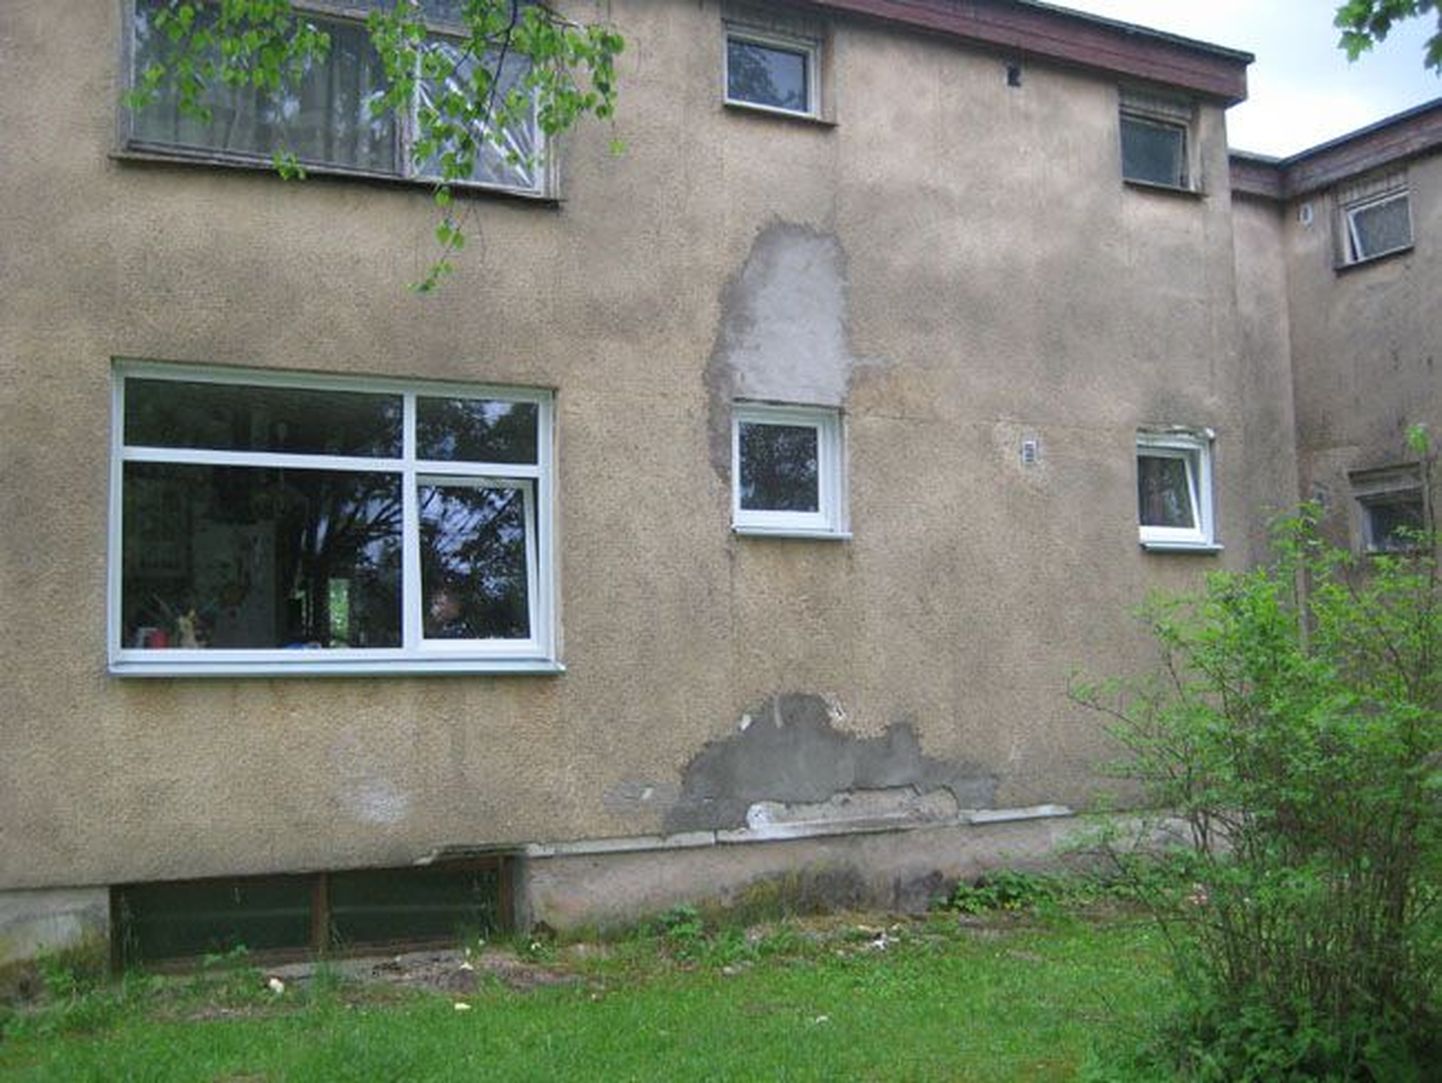 Annetuste eest sai pere korter uued aknad.